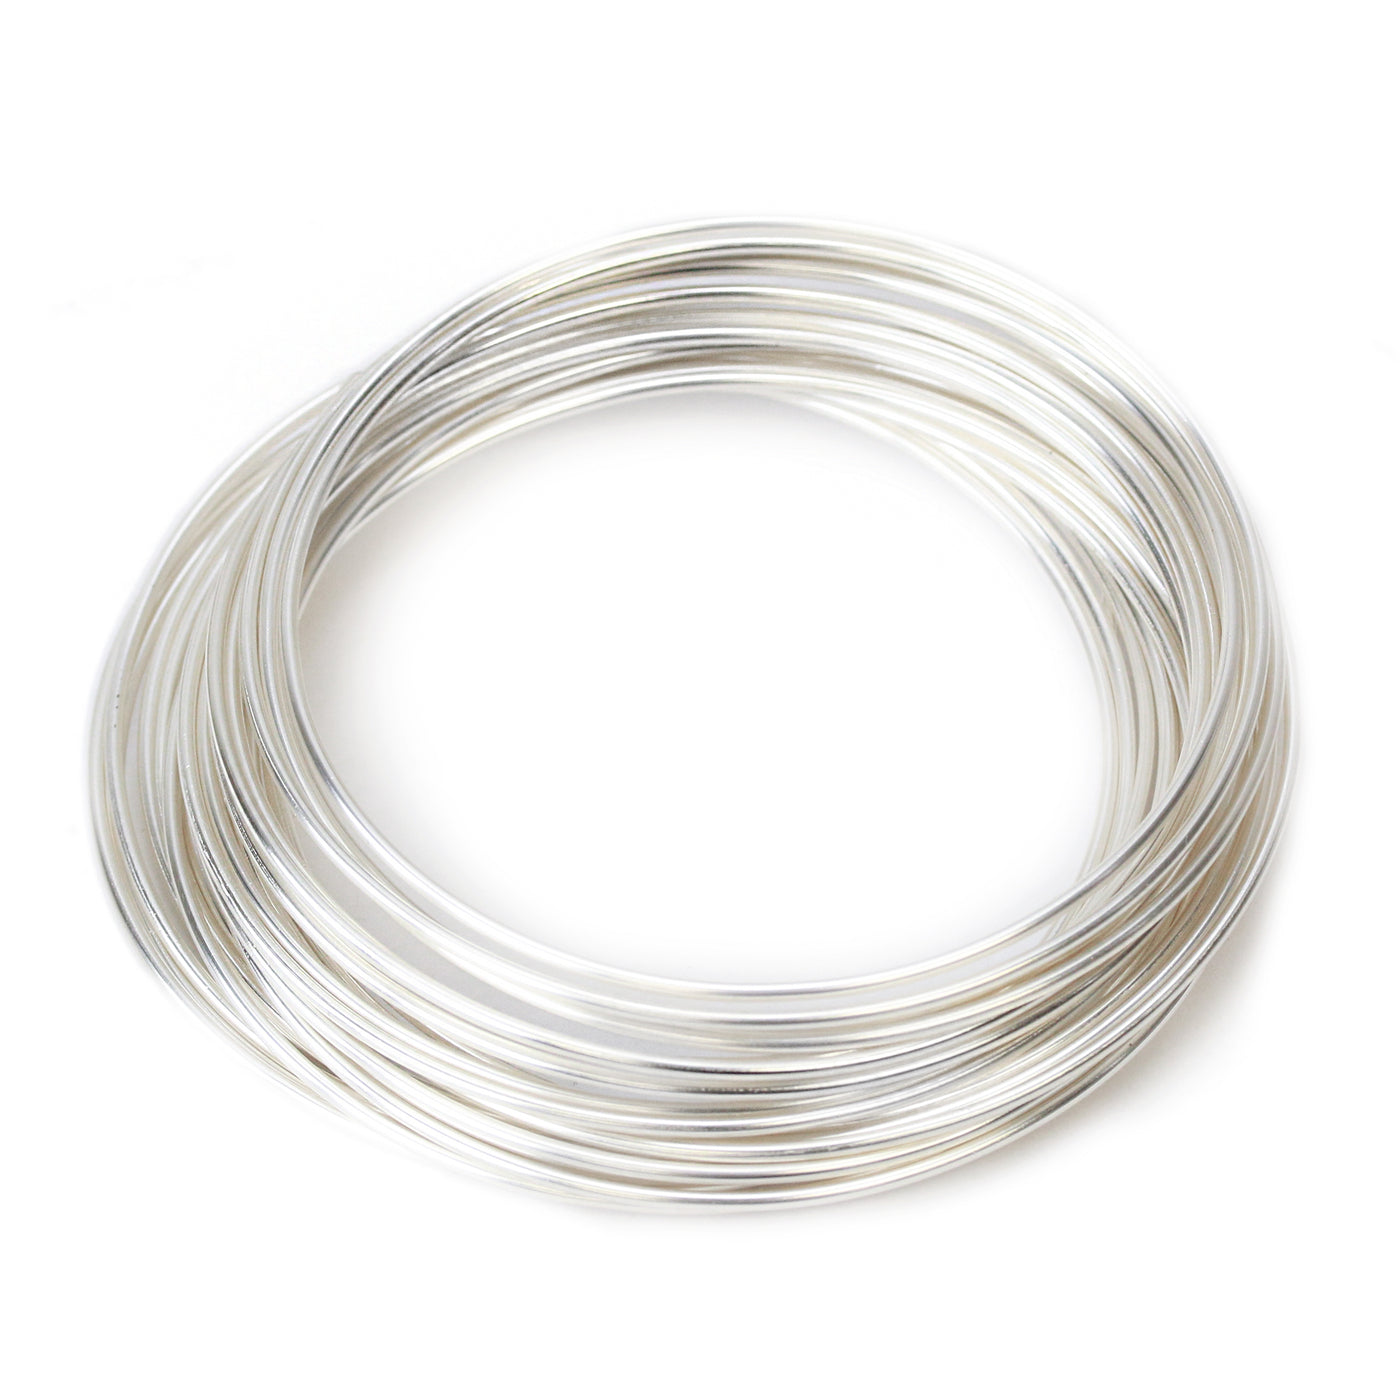 CLOSEOUT Non Tarnish Silver Tone Craft Wire, 16g